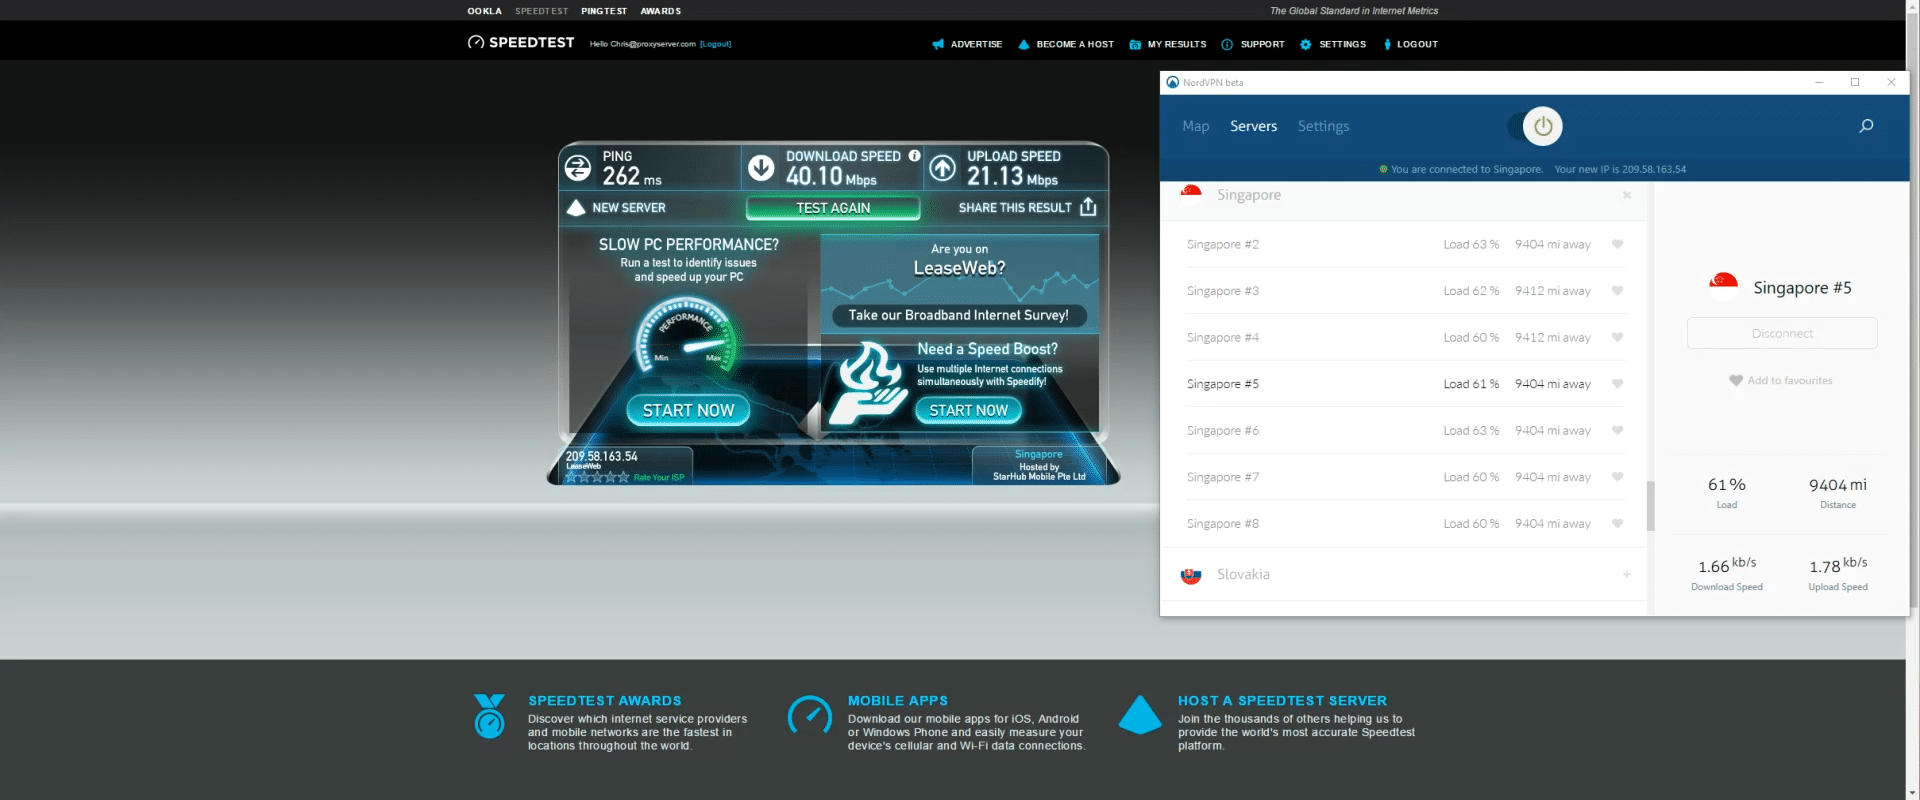 NordVPN Speedtest Singapur mit einer Downloadgeschwindigkeit von 40 Mbps